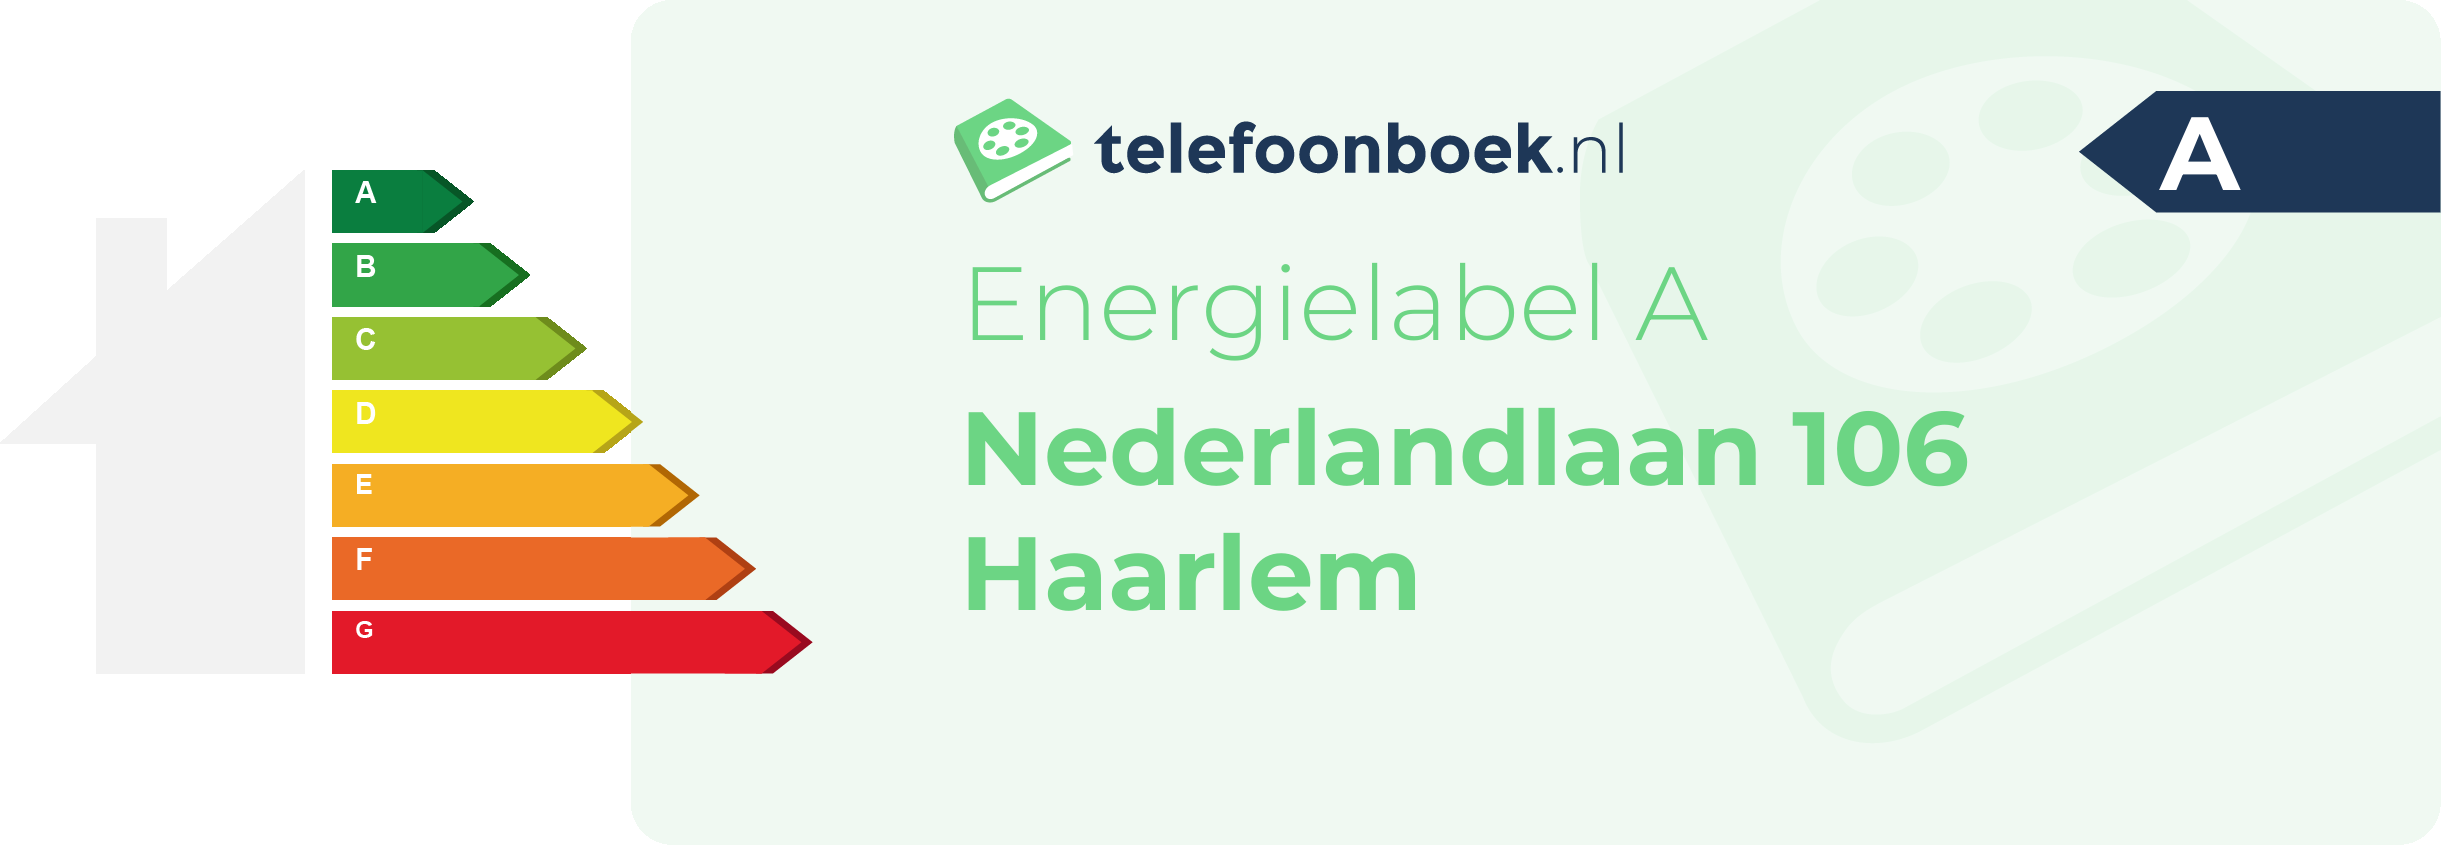 Energielabel Nederlandlaan 106 Haarlem